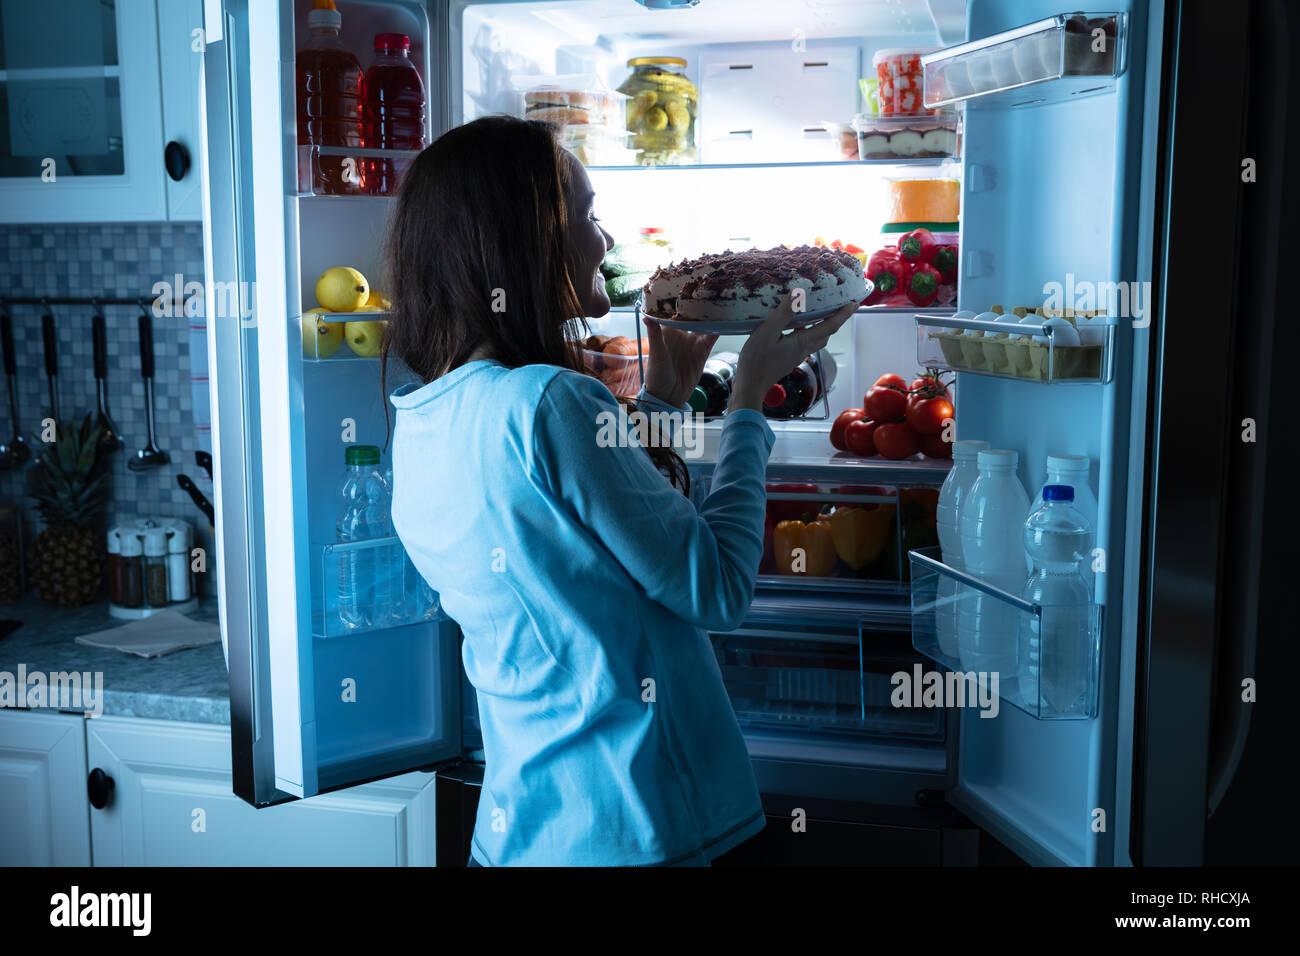 Sorridente giovane donna che guarda la torta nella parte anteriore di un frigorifero aperto Foto Stock